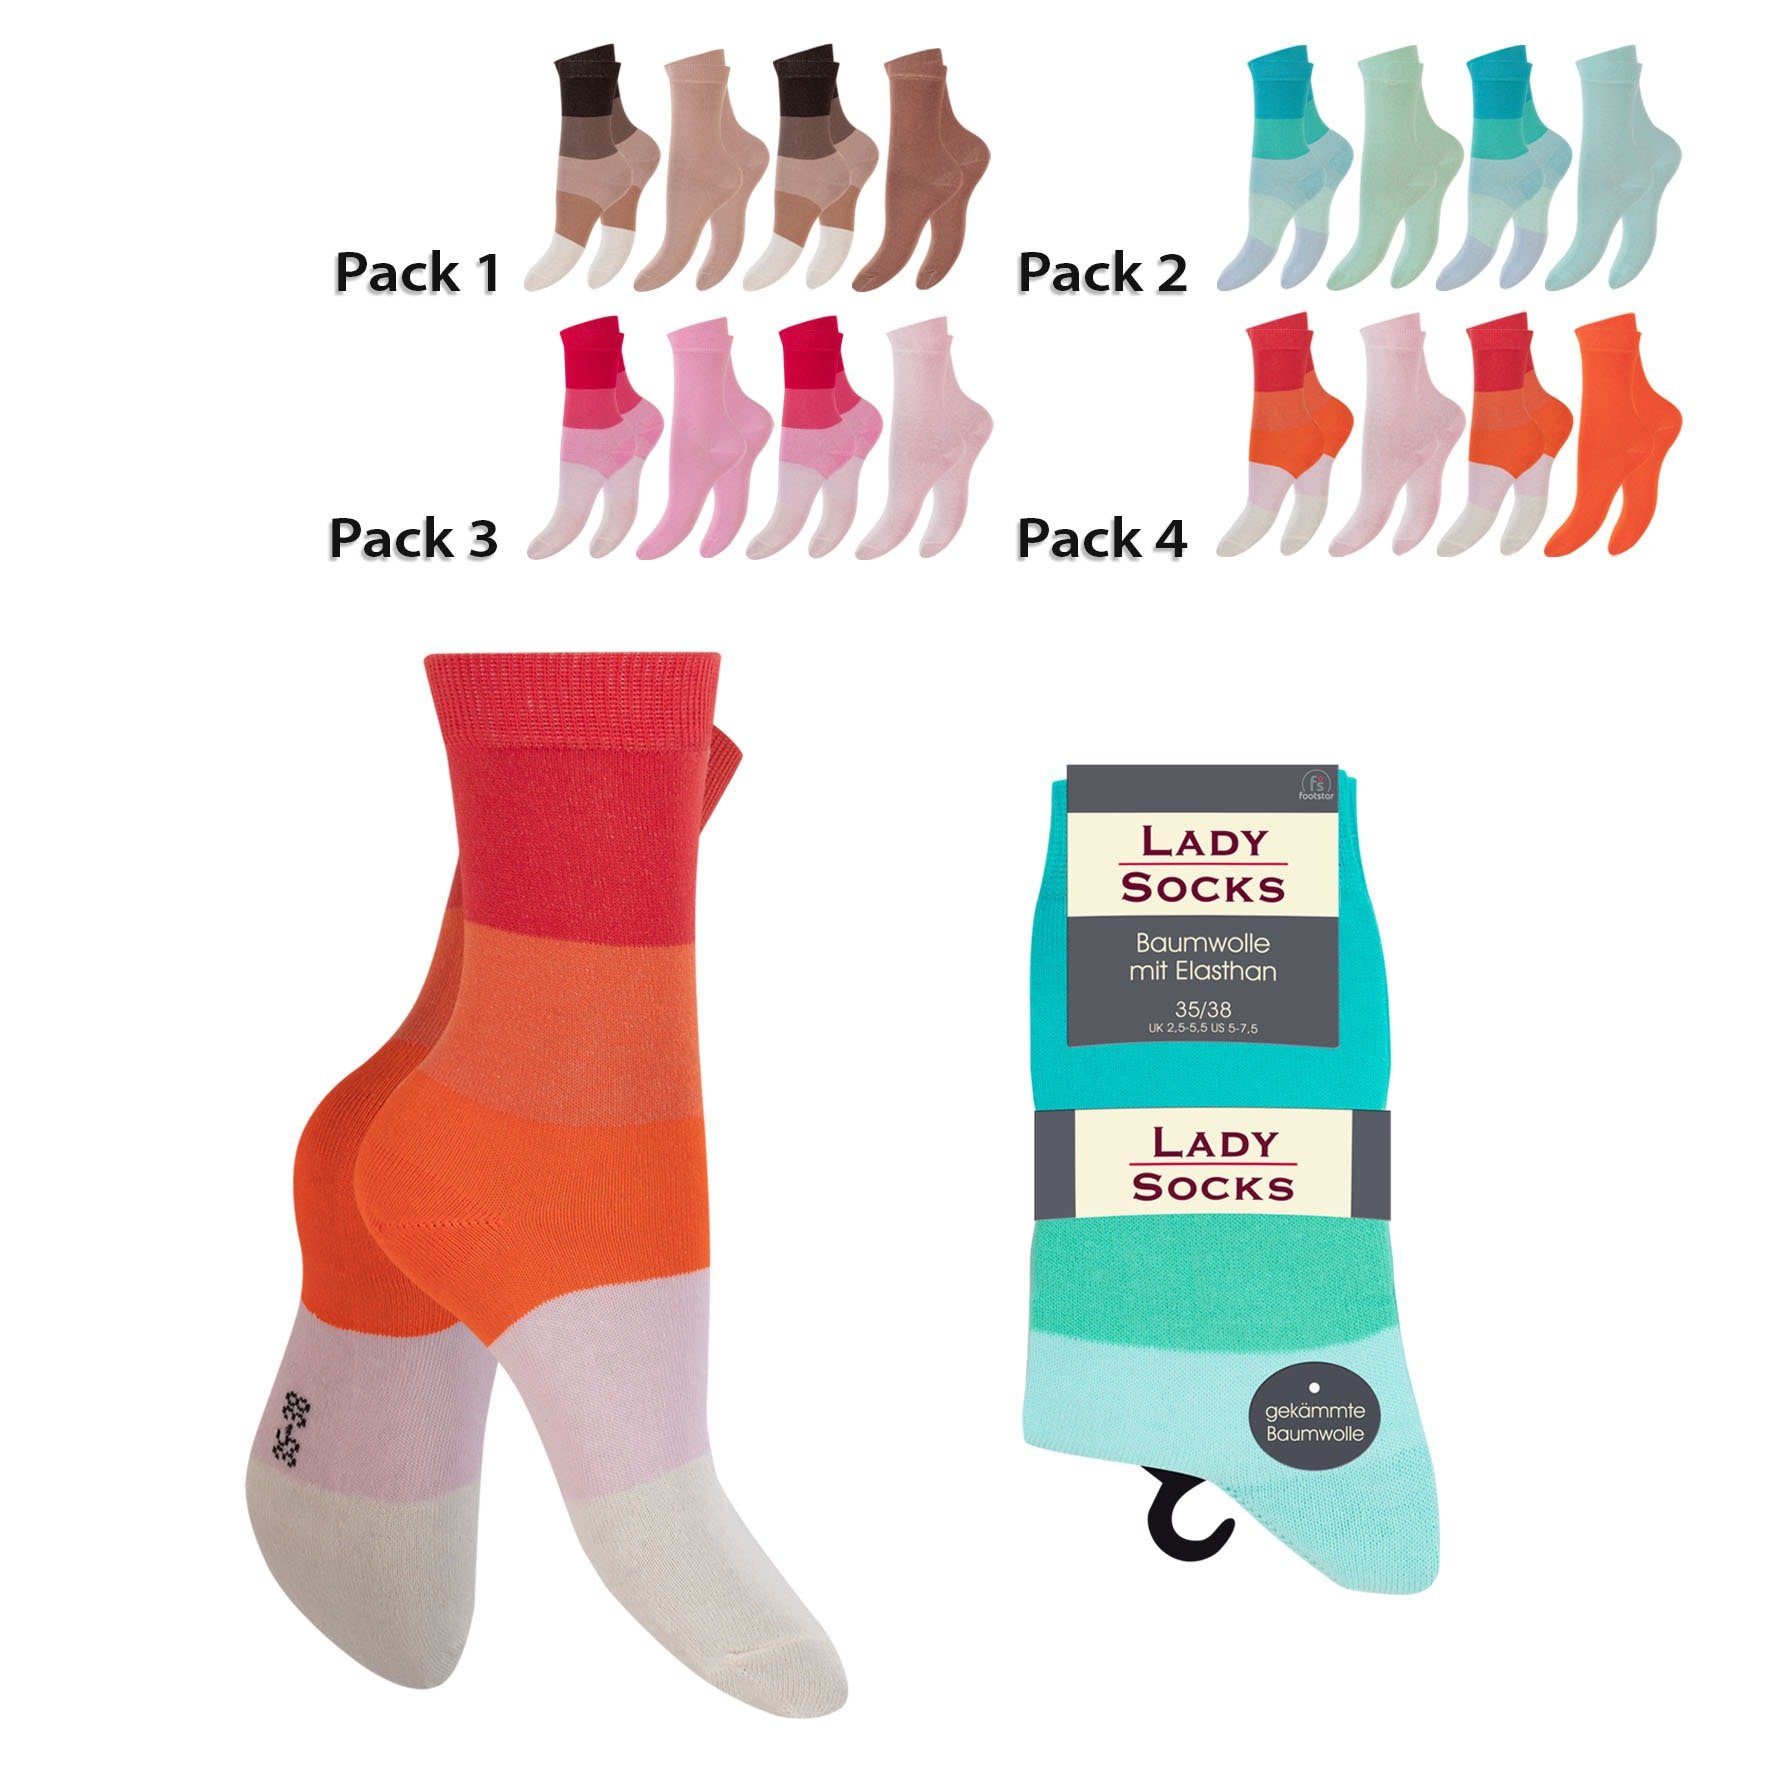 Socken (8-Paar) underwear Socken atmungsaktiv 2 Damen Pack Cocain Vorteilspack hoher Tragekomfort